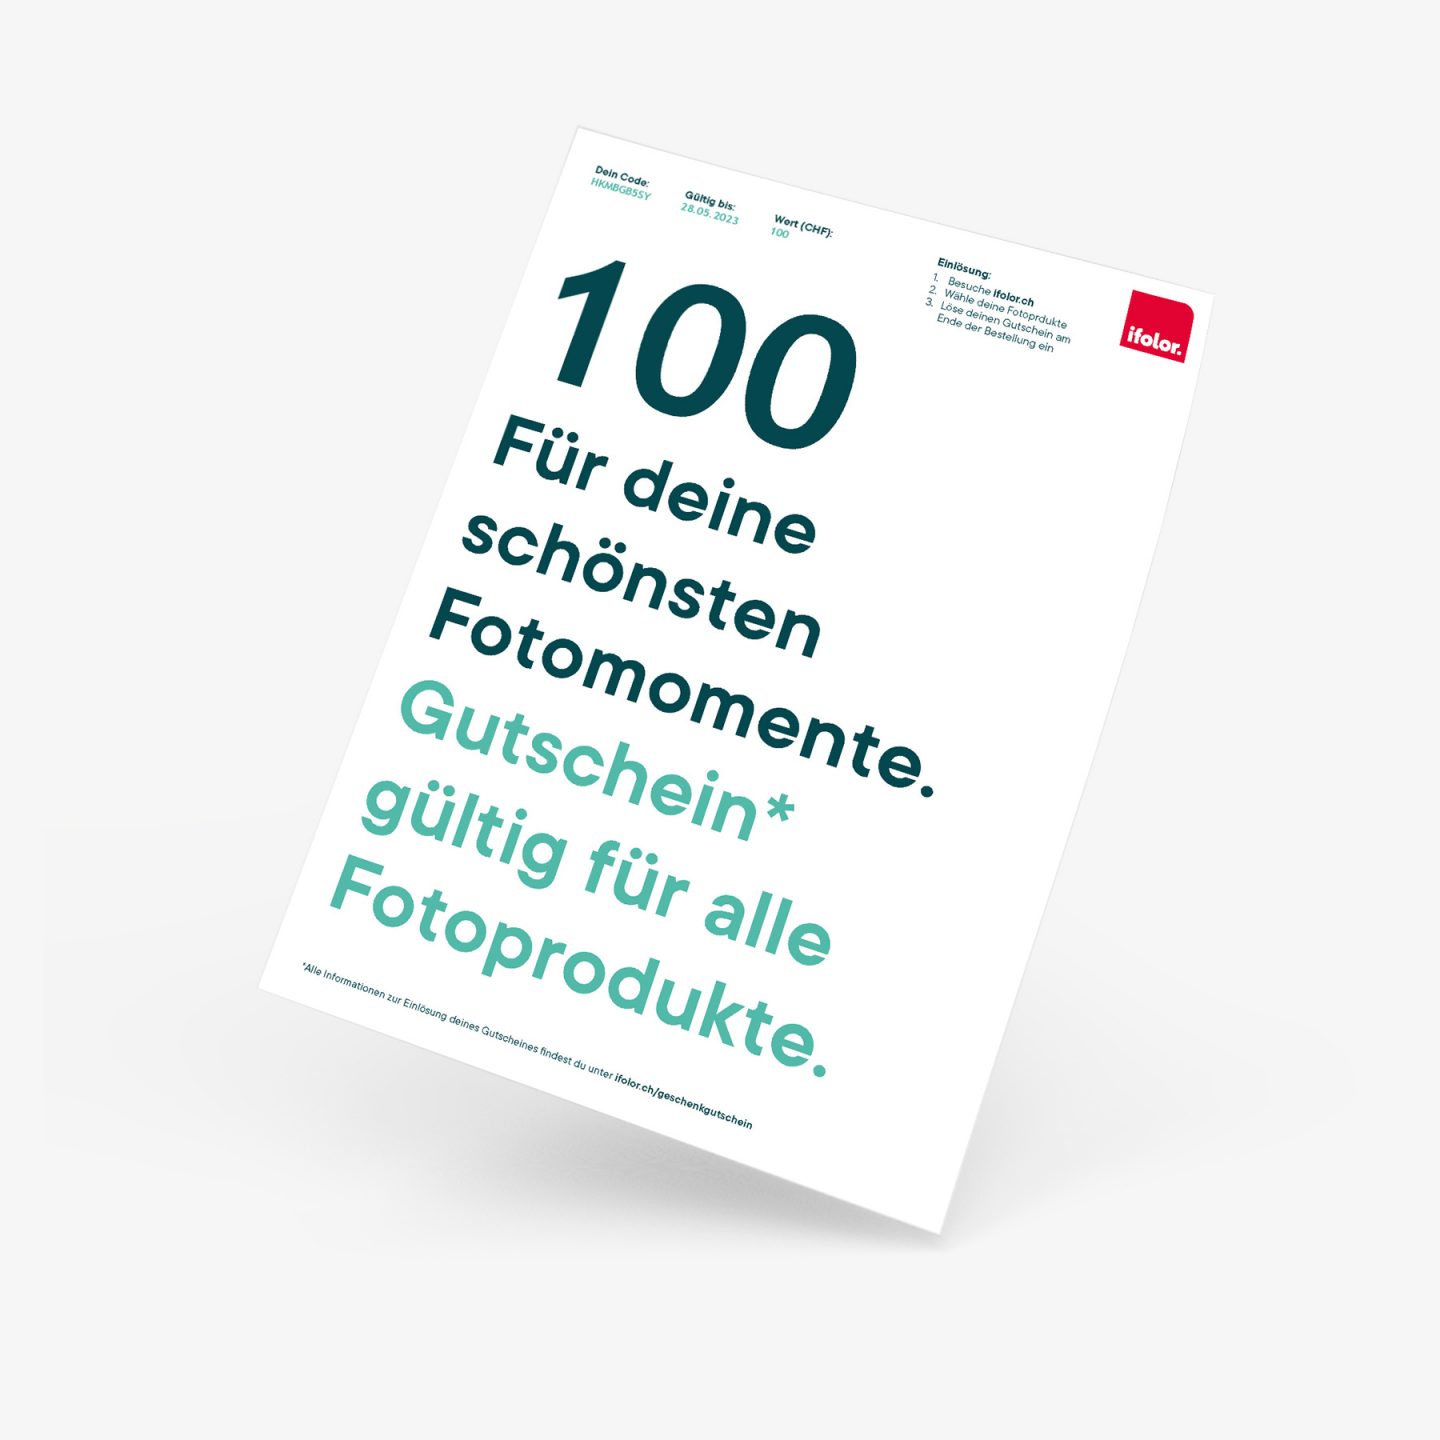 100-pdf.jpg